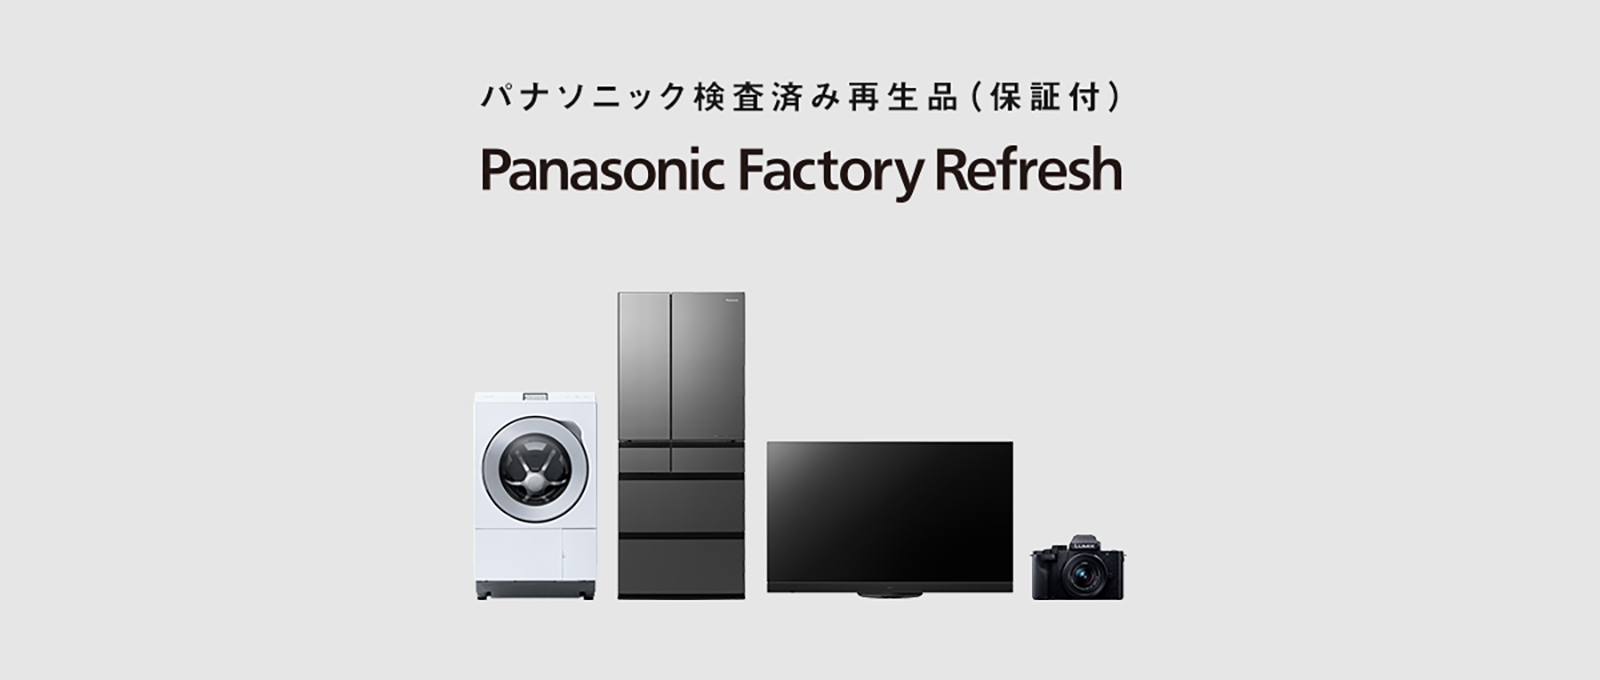 Panasonic Factory Refreshキービジュアル